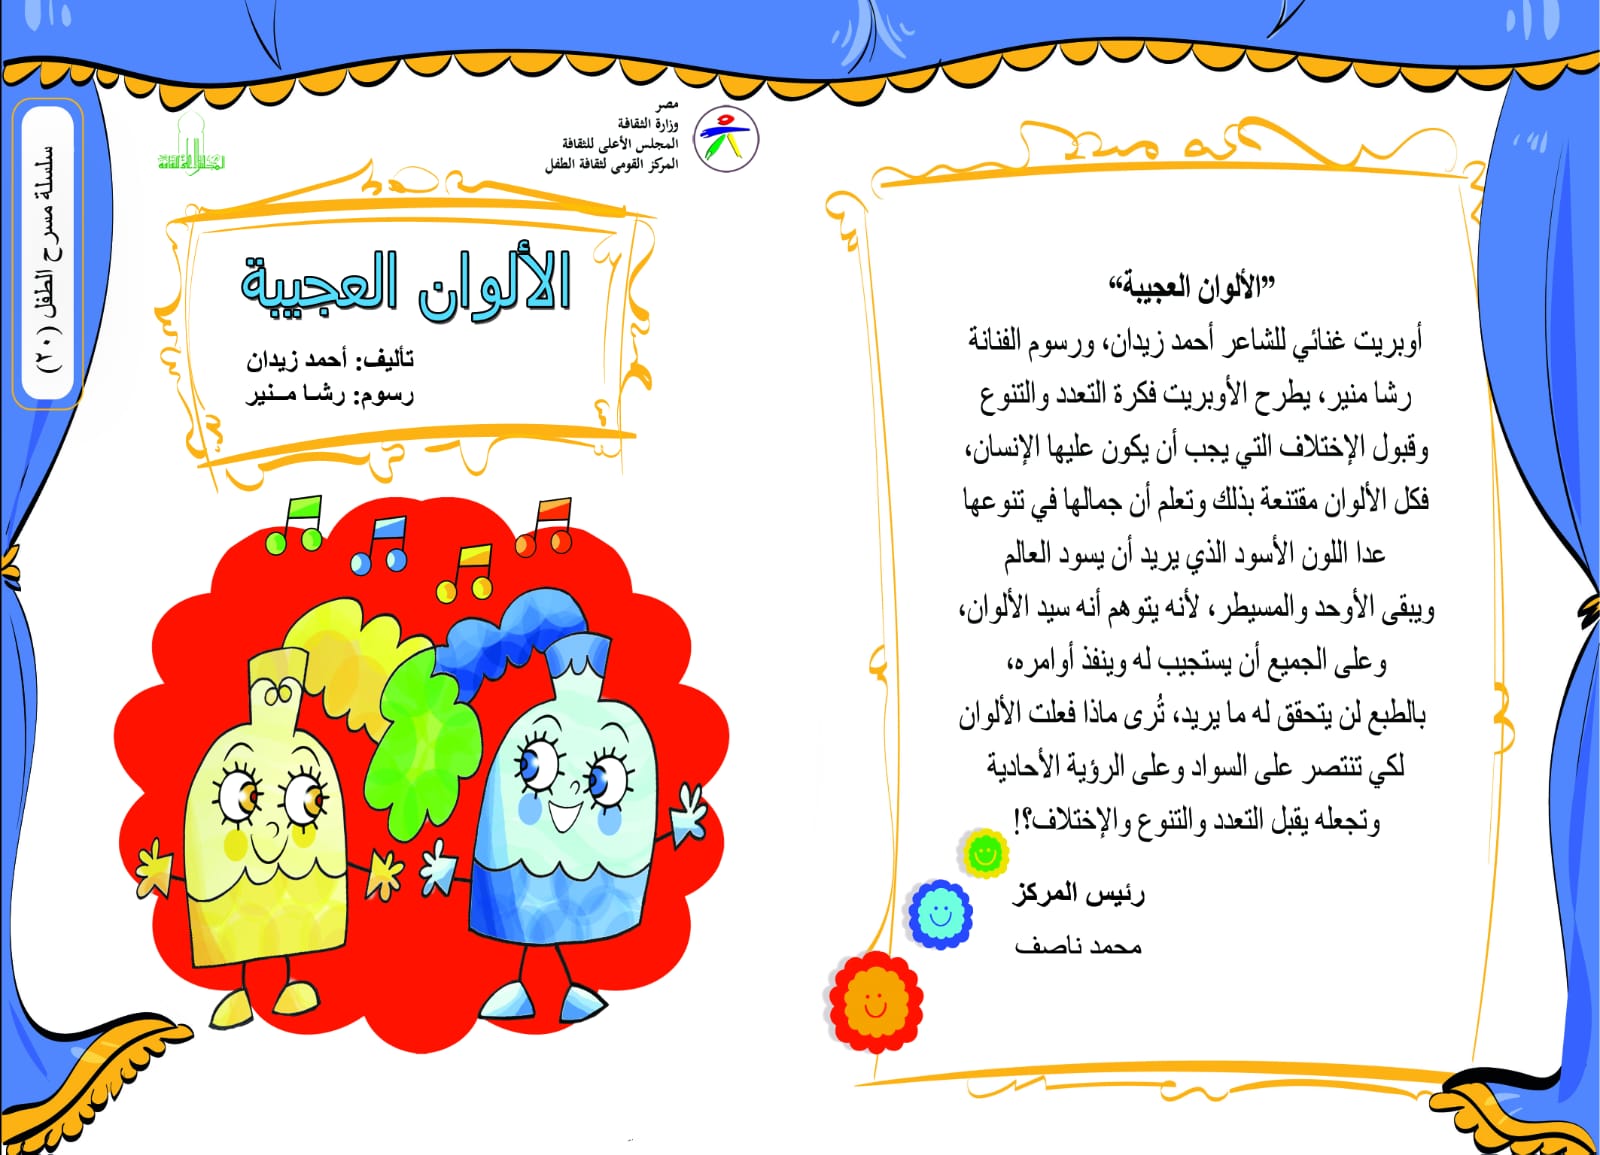 حفل توقيع كتاب ” الألوان العجيبة” بالحديقة الثقافية للأطفال… اليوم السبت